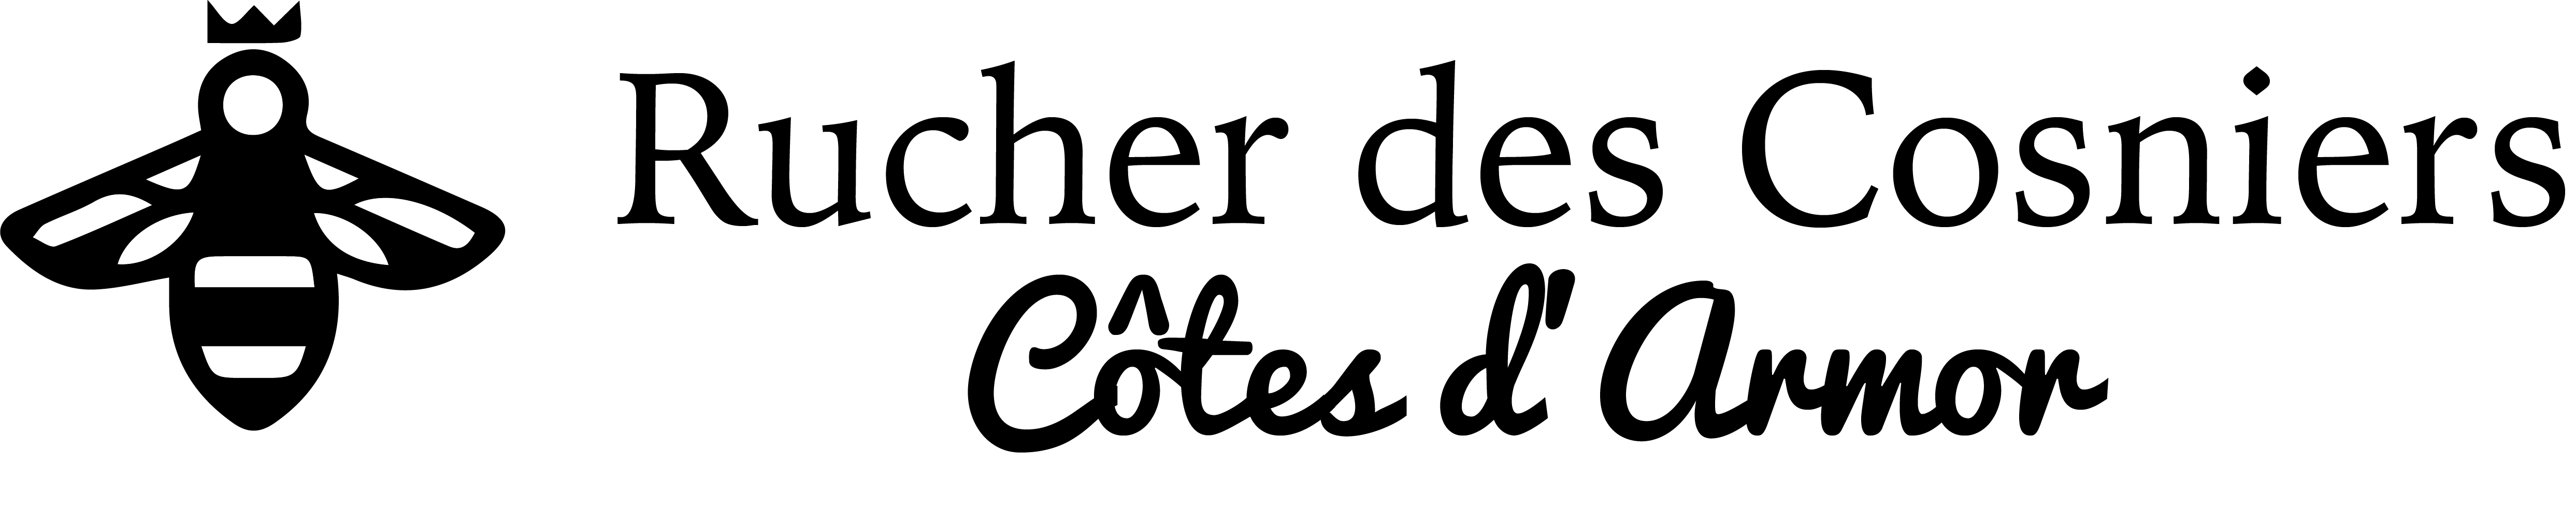 Le Rucher des Cosniers logo